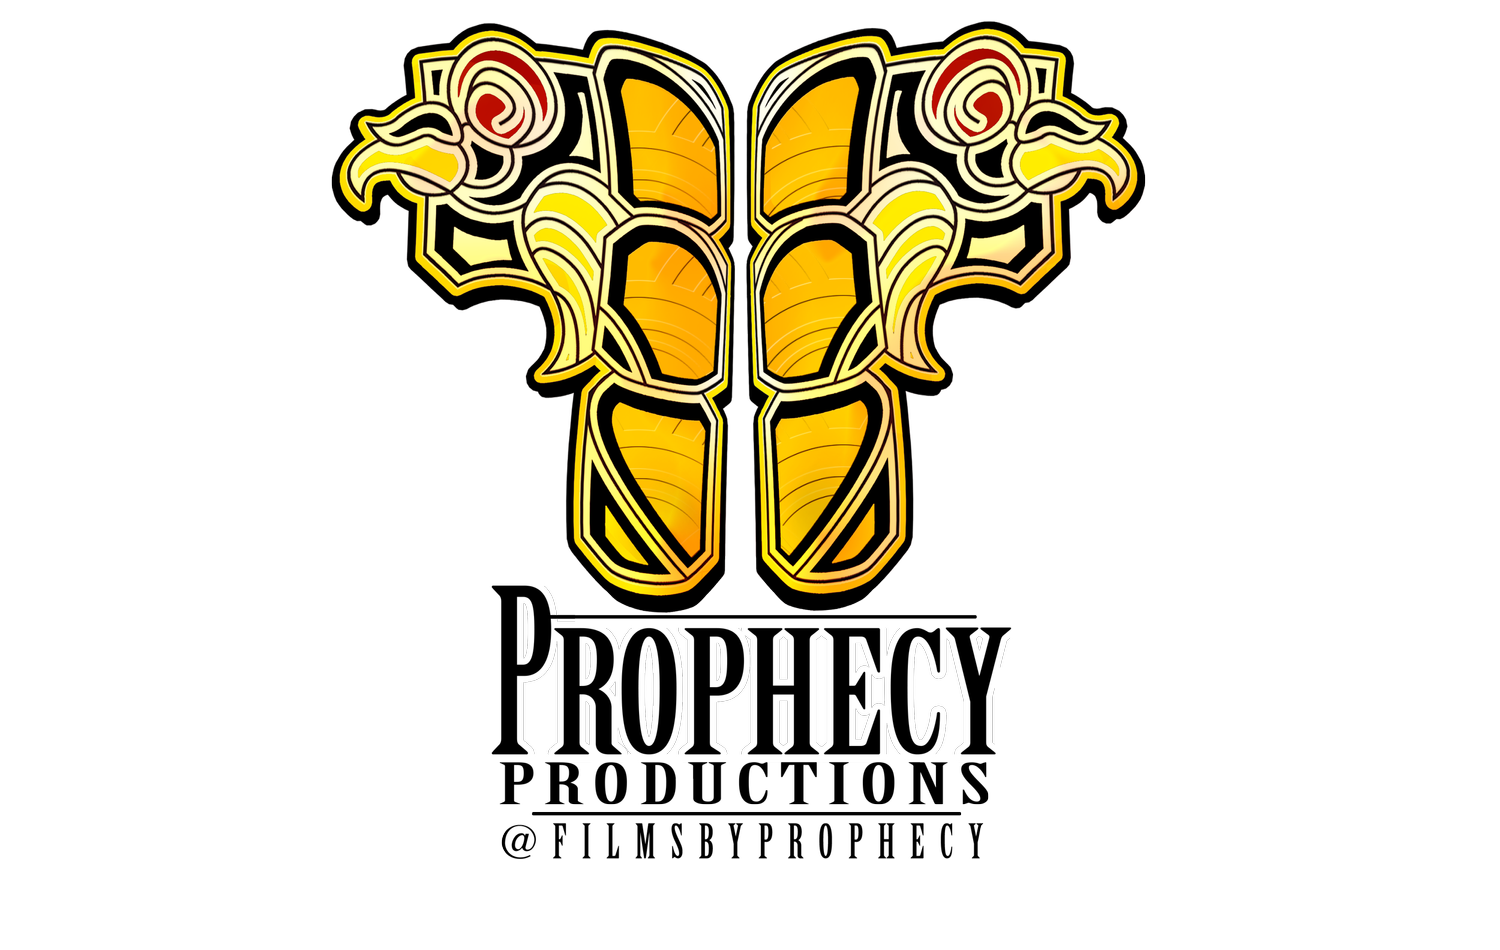 Prophecy Film Studio